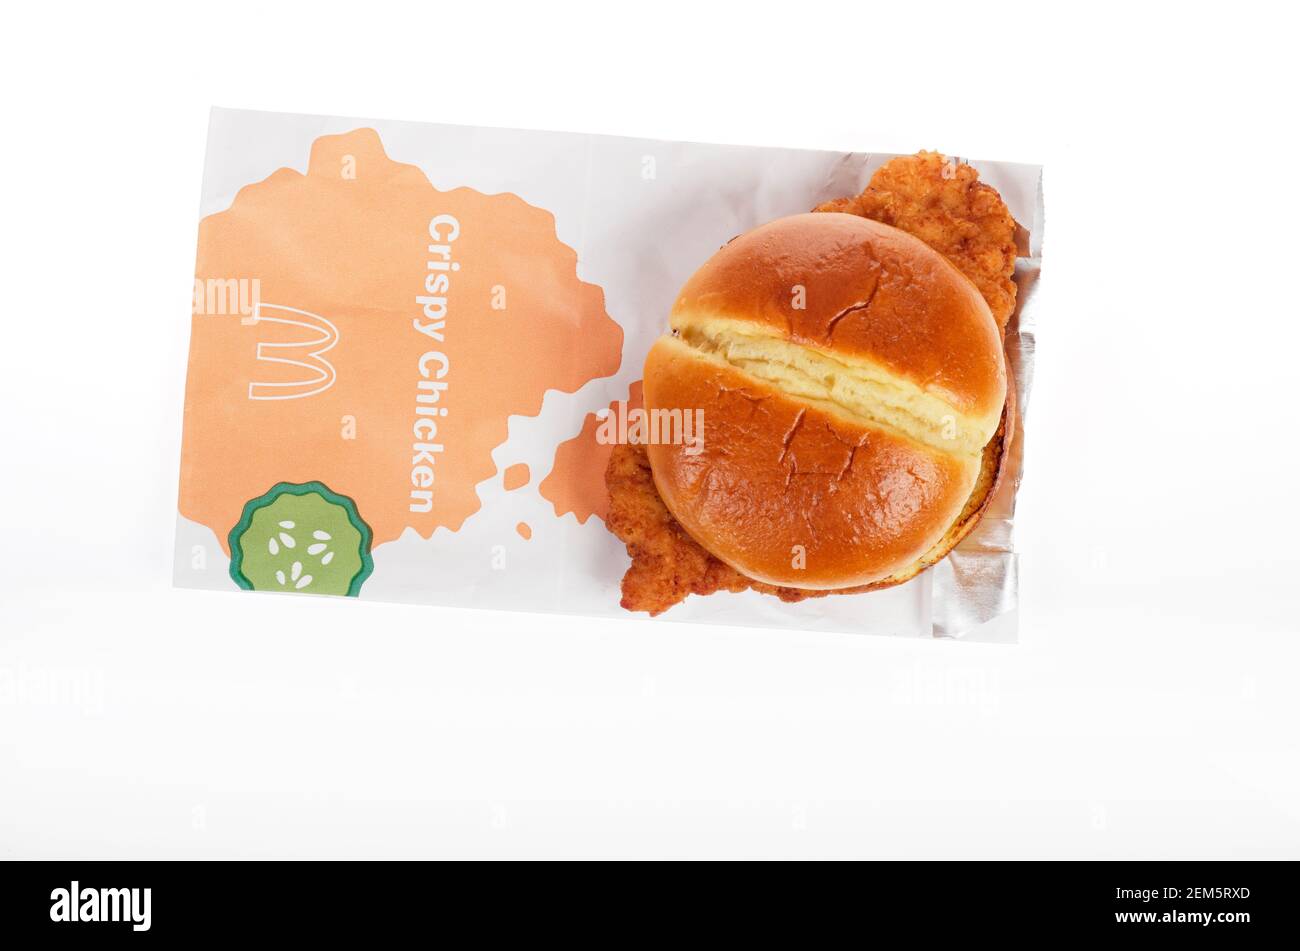 McDonalds neues Crispy Chicken Sandwich & Bag am 24th. Februar 2021 in den USA veröffentlicht Stockfoto